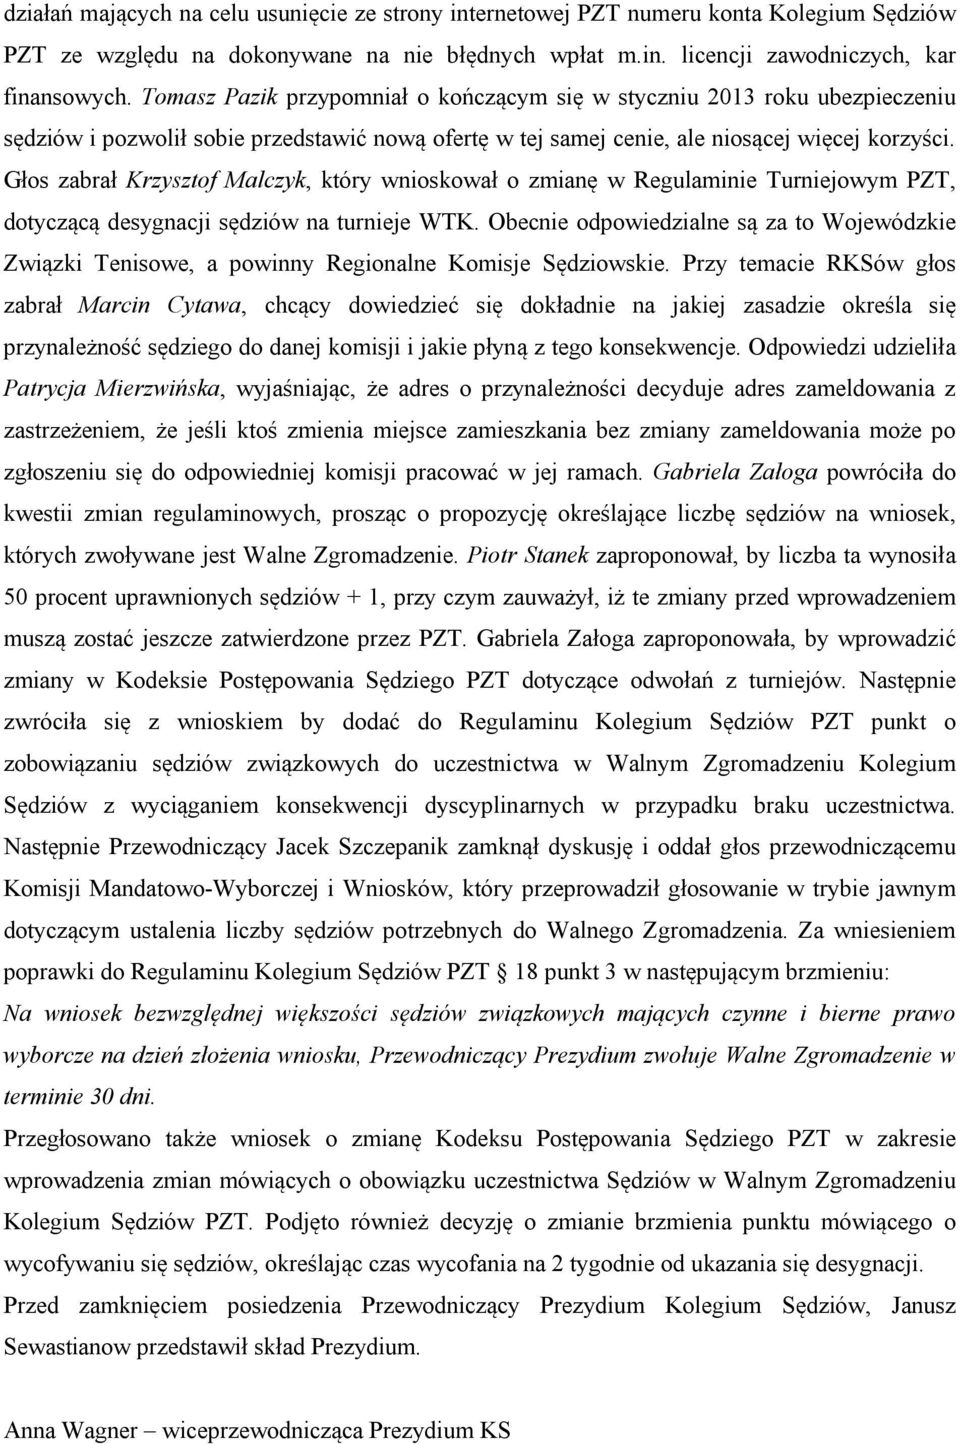 Głos zabrał Krzysztof Malczyk, który wnioskował o zmianę w Regulaminie Turniejowym PZT, dotyczącą desygnacji sędziów na turnieje WTK.